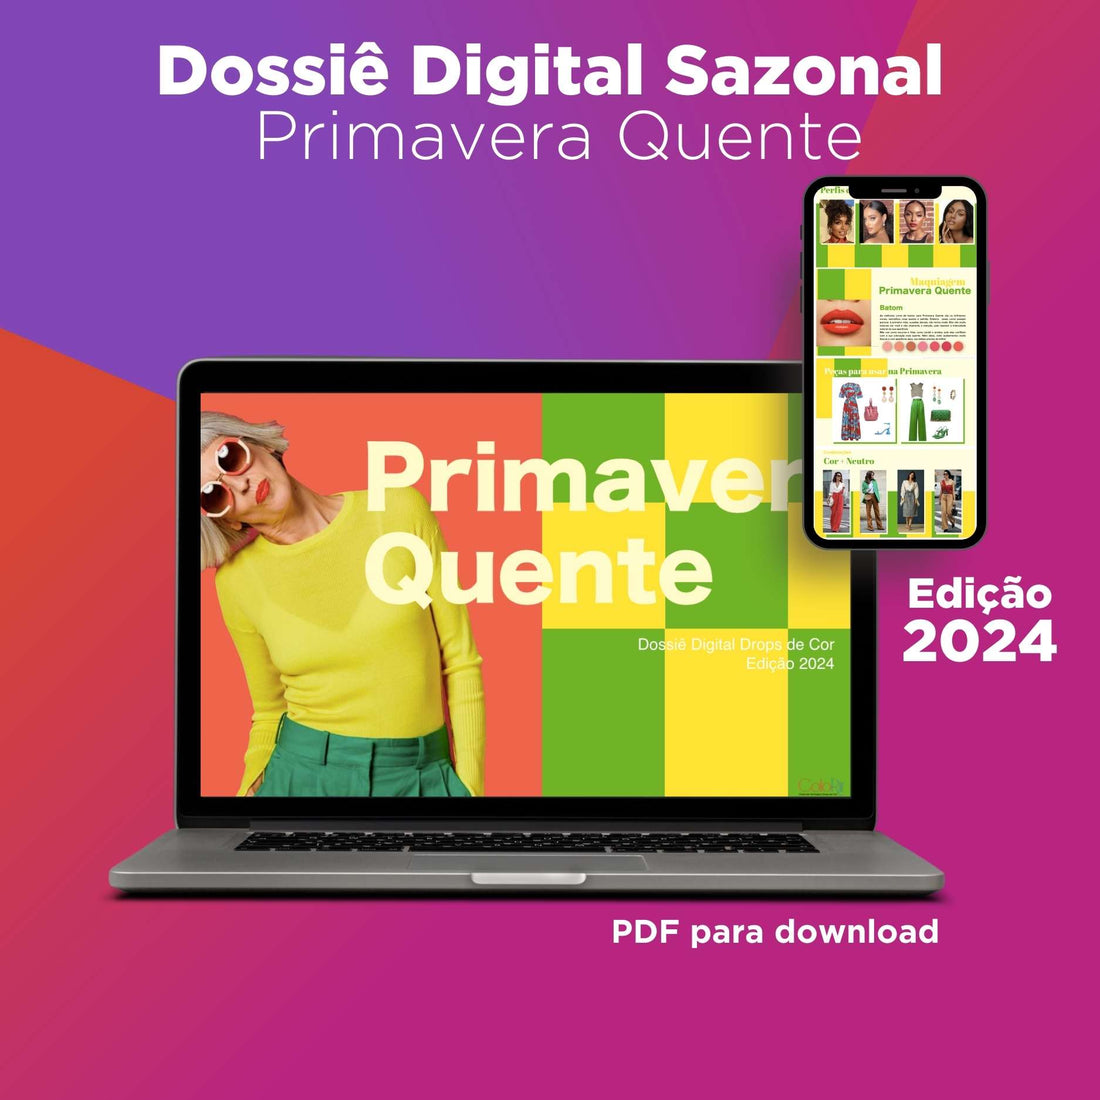 Dossier Digital de Temporada - Aguas Termales - Edición 2024